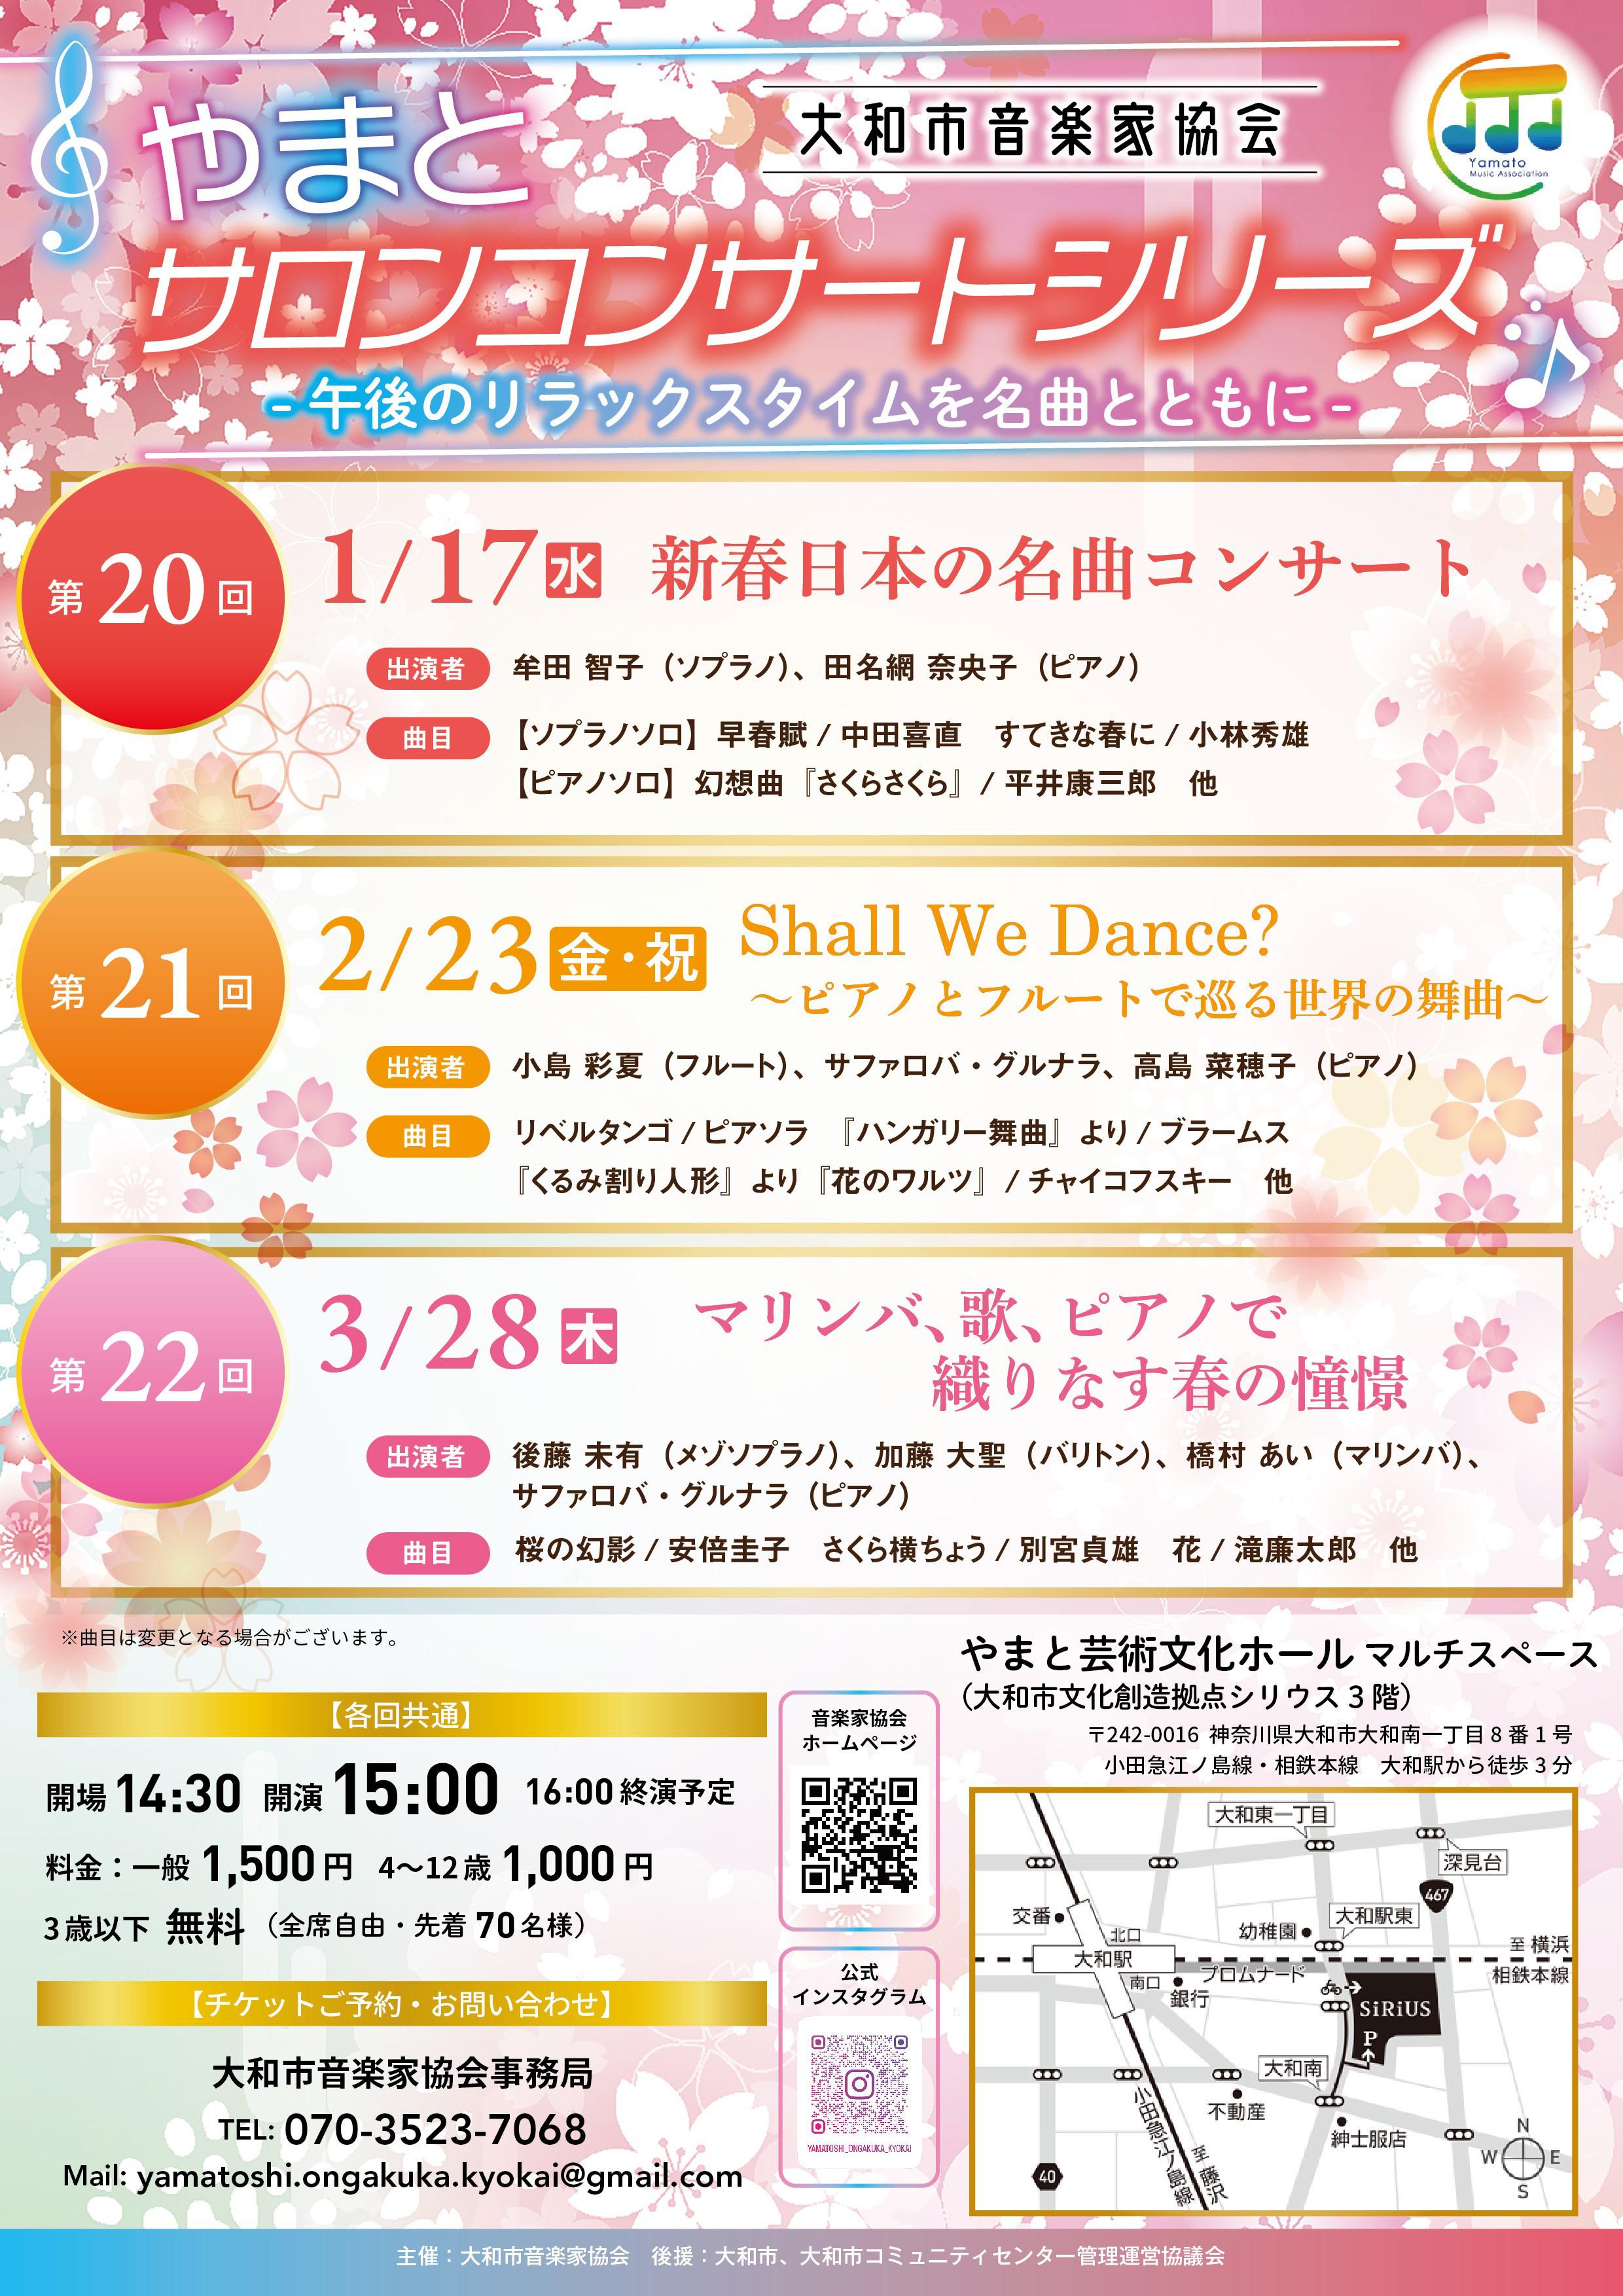 やまとサロンコンサートシリーズ 第21回 Shall We Dance? 〜ピアノとフルートで巡る世界の舞曲～